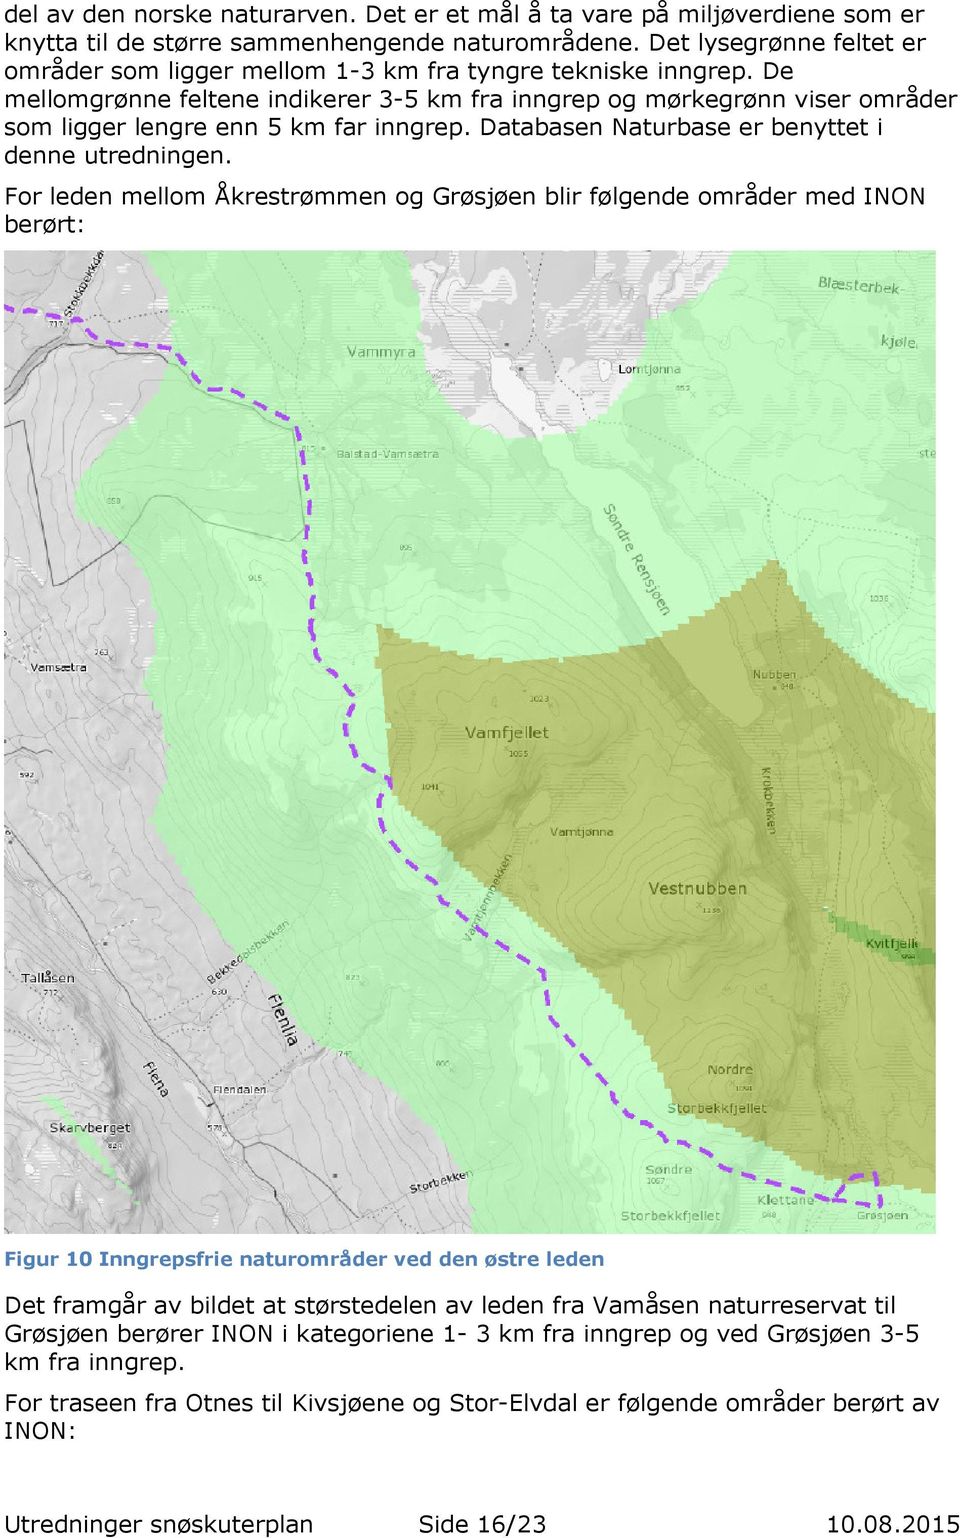 De mellomgrønne feltene indikerer 3-5 km fra inngrep og mørkegrønn viser områder som ligger lengre enn 5 km far inngrep. Databasen Naturbase er benyttet i denne utredningen.